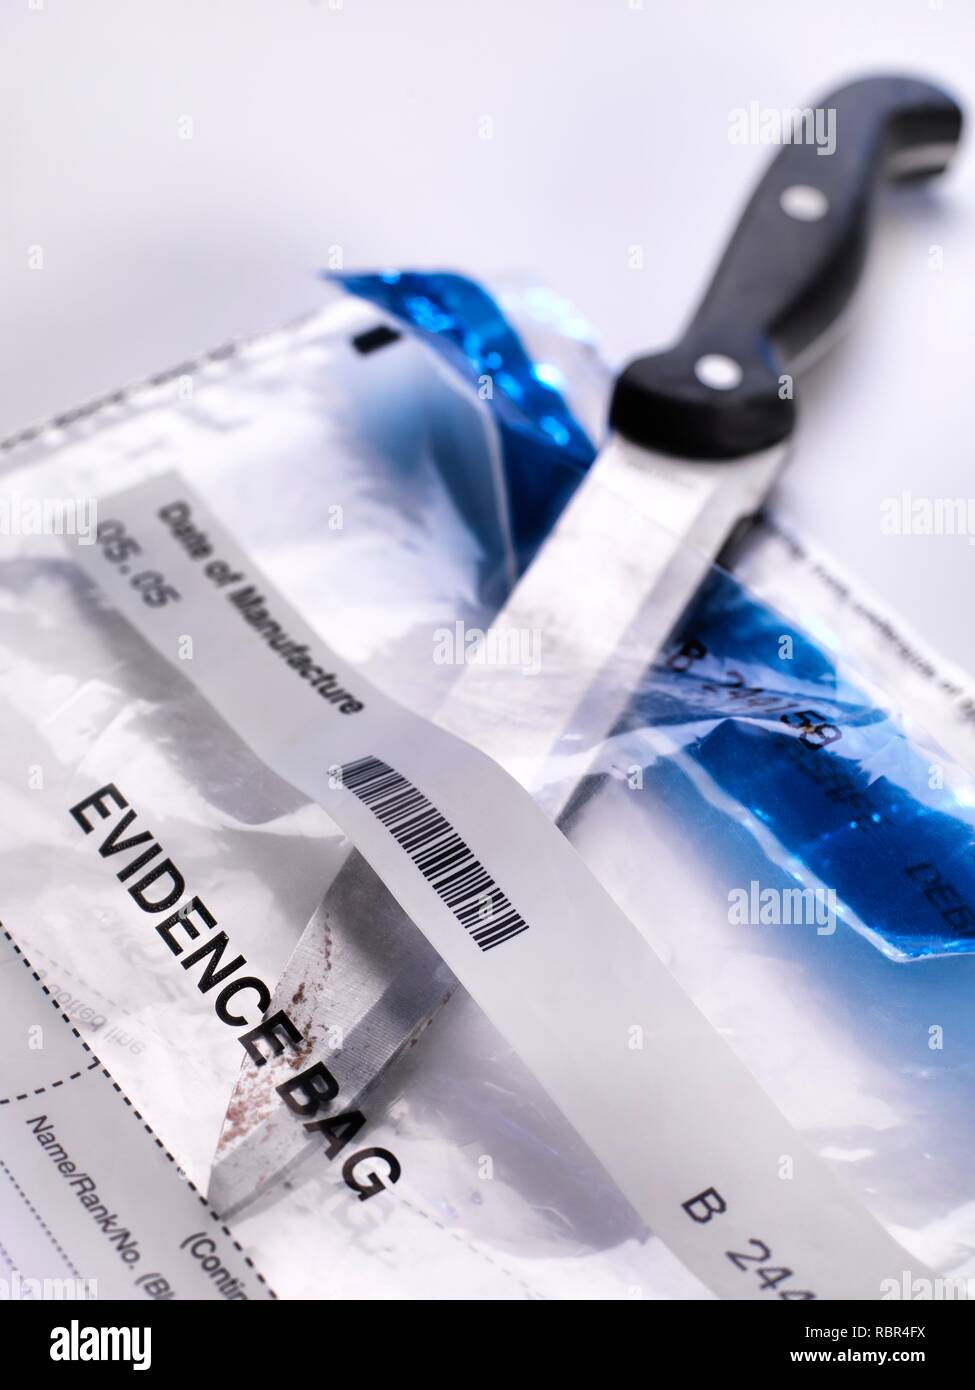 Recopilación de pruebas forenses. Un cuchillo sobre que se limpió de ADN (ácido desoxirribonucleico) y otras pruebas forenses. Foto de stock